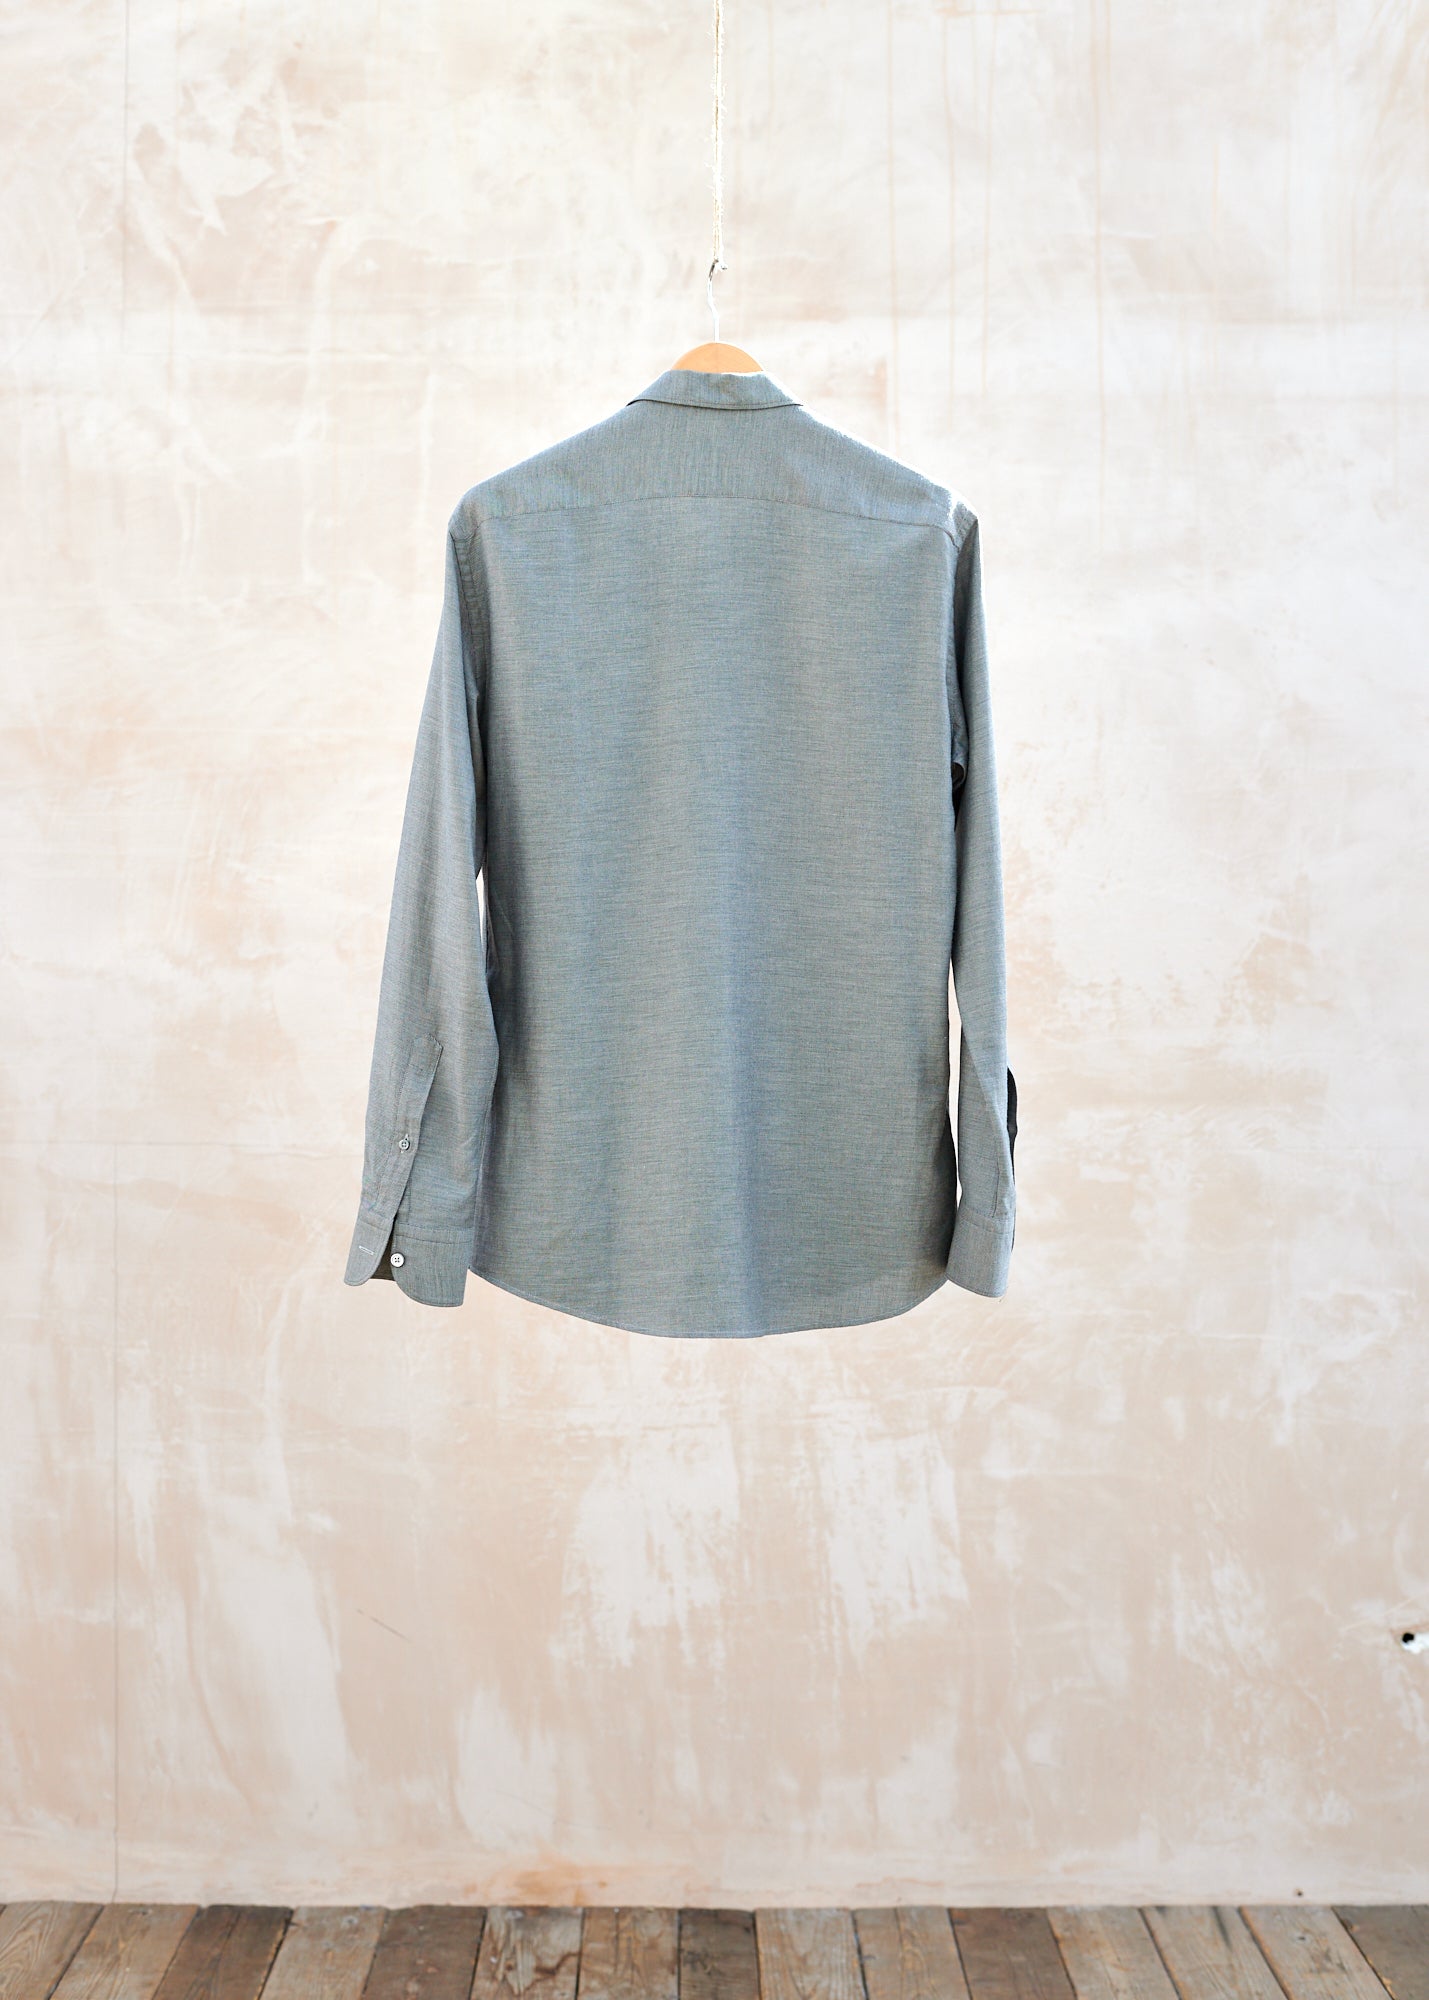 Ermenegildo Zegna Grey Cotton/Cashmere Twill Shirt - M/L